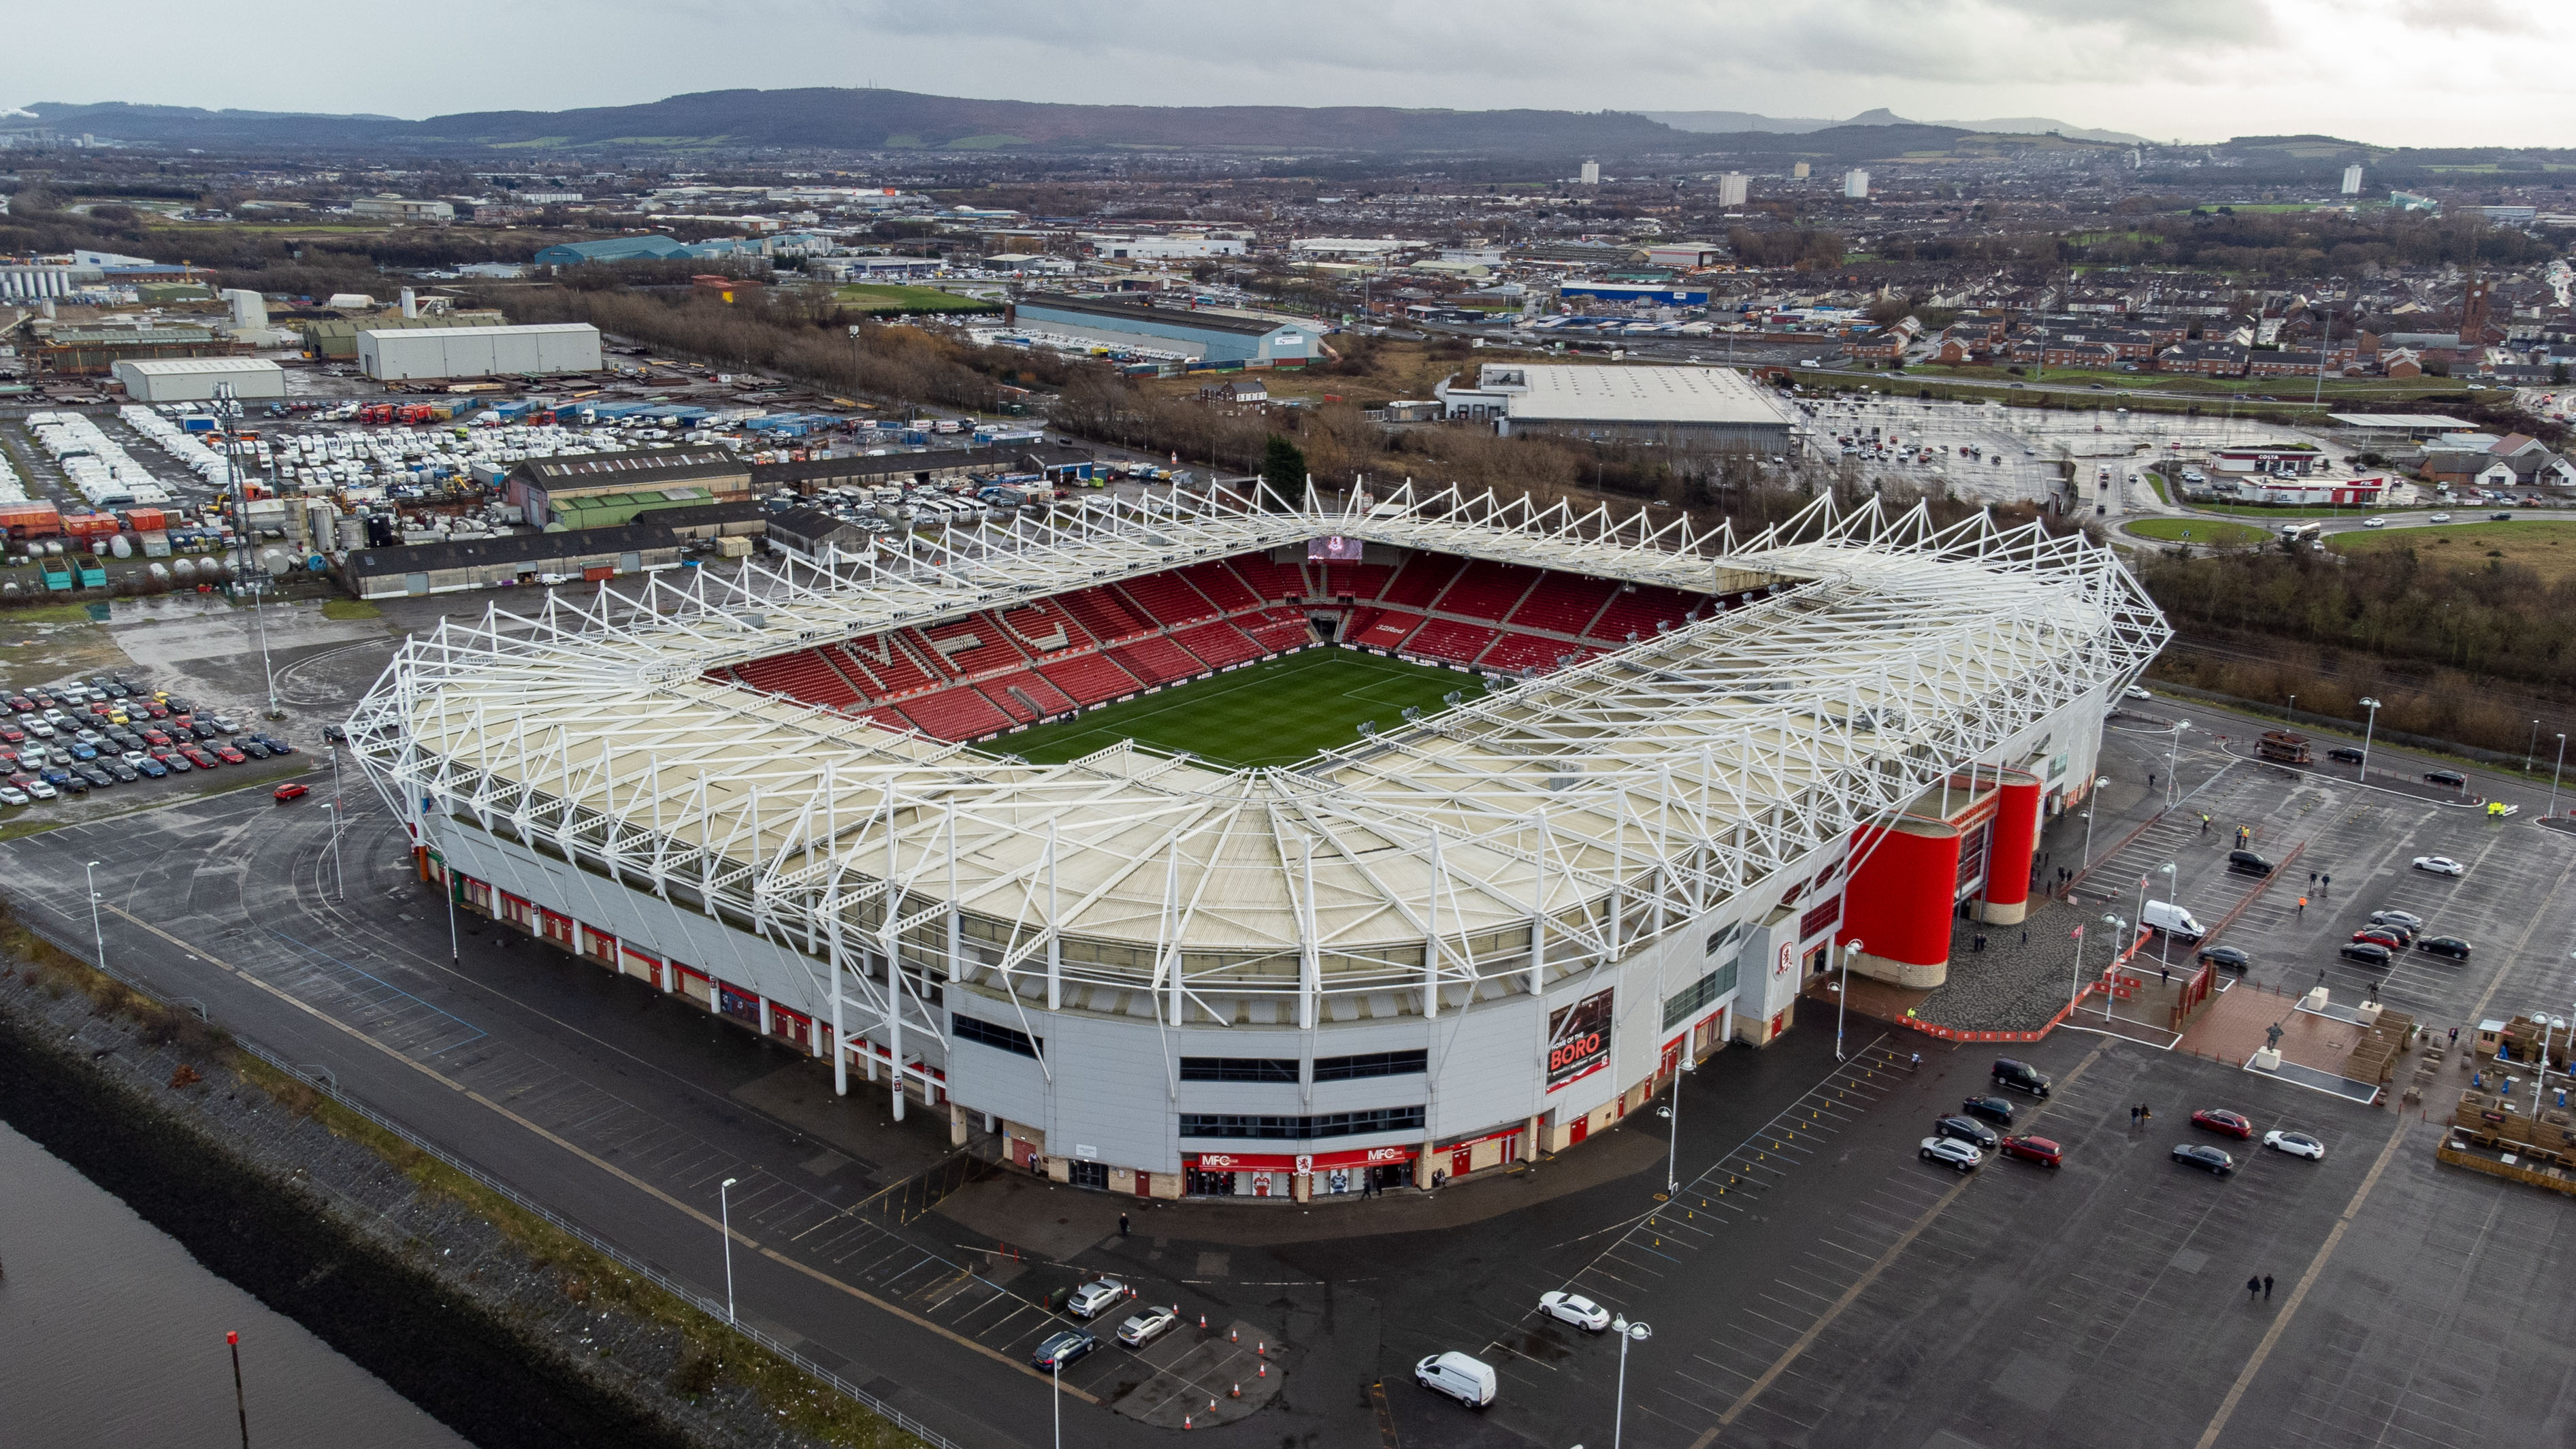 Sân vận động Riverside - Biểu tượng của câu lạc bộ Middlesbrough